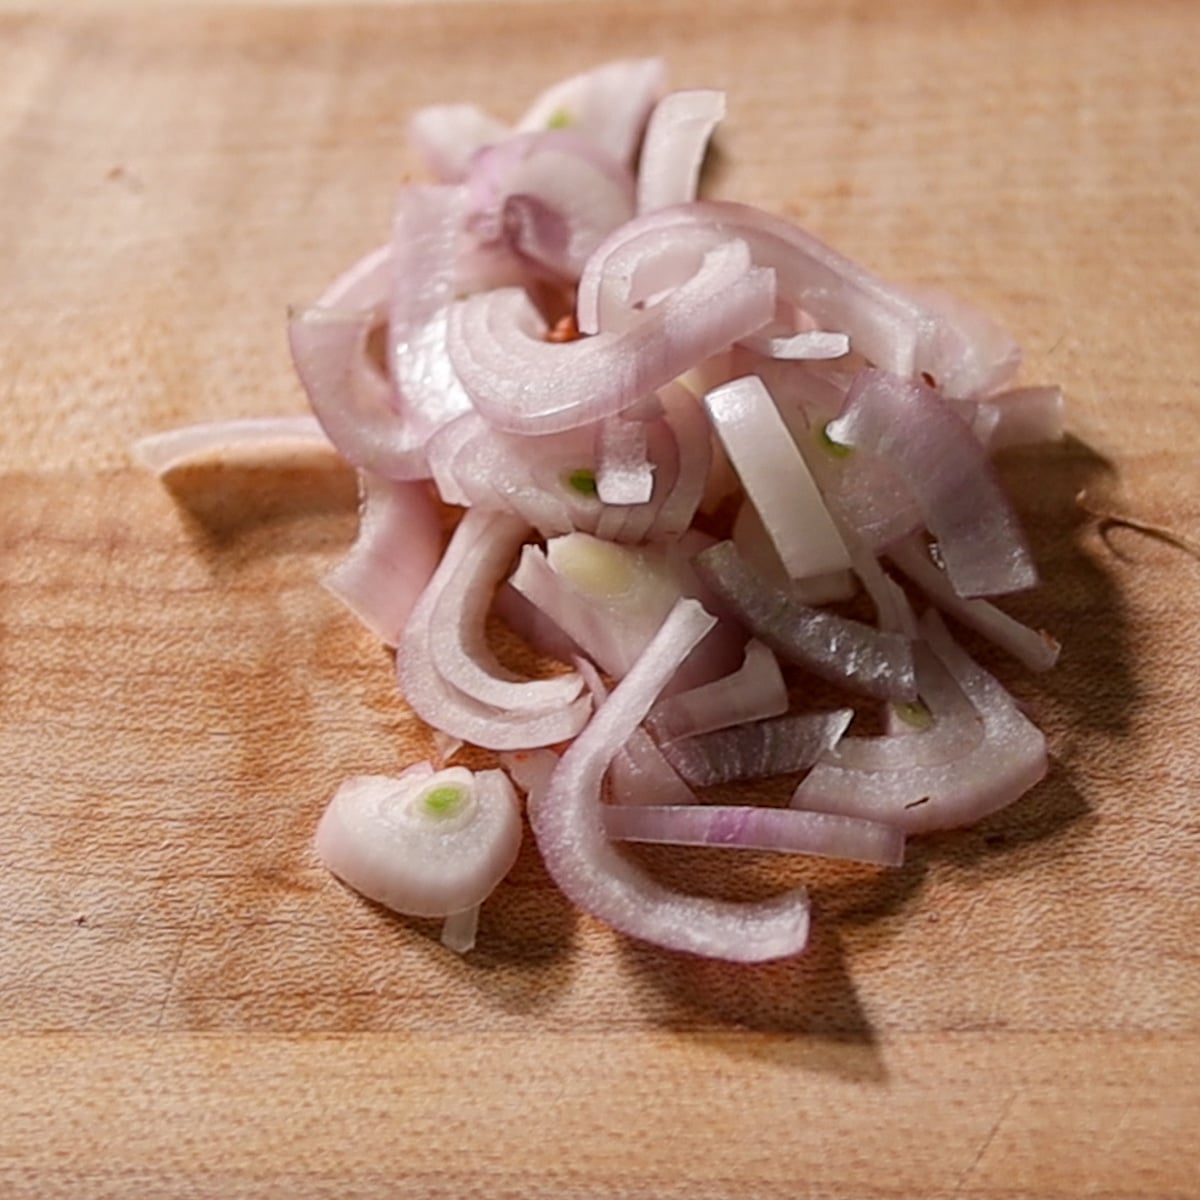 Thai onion